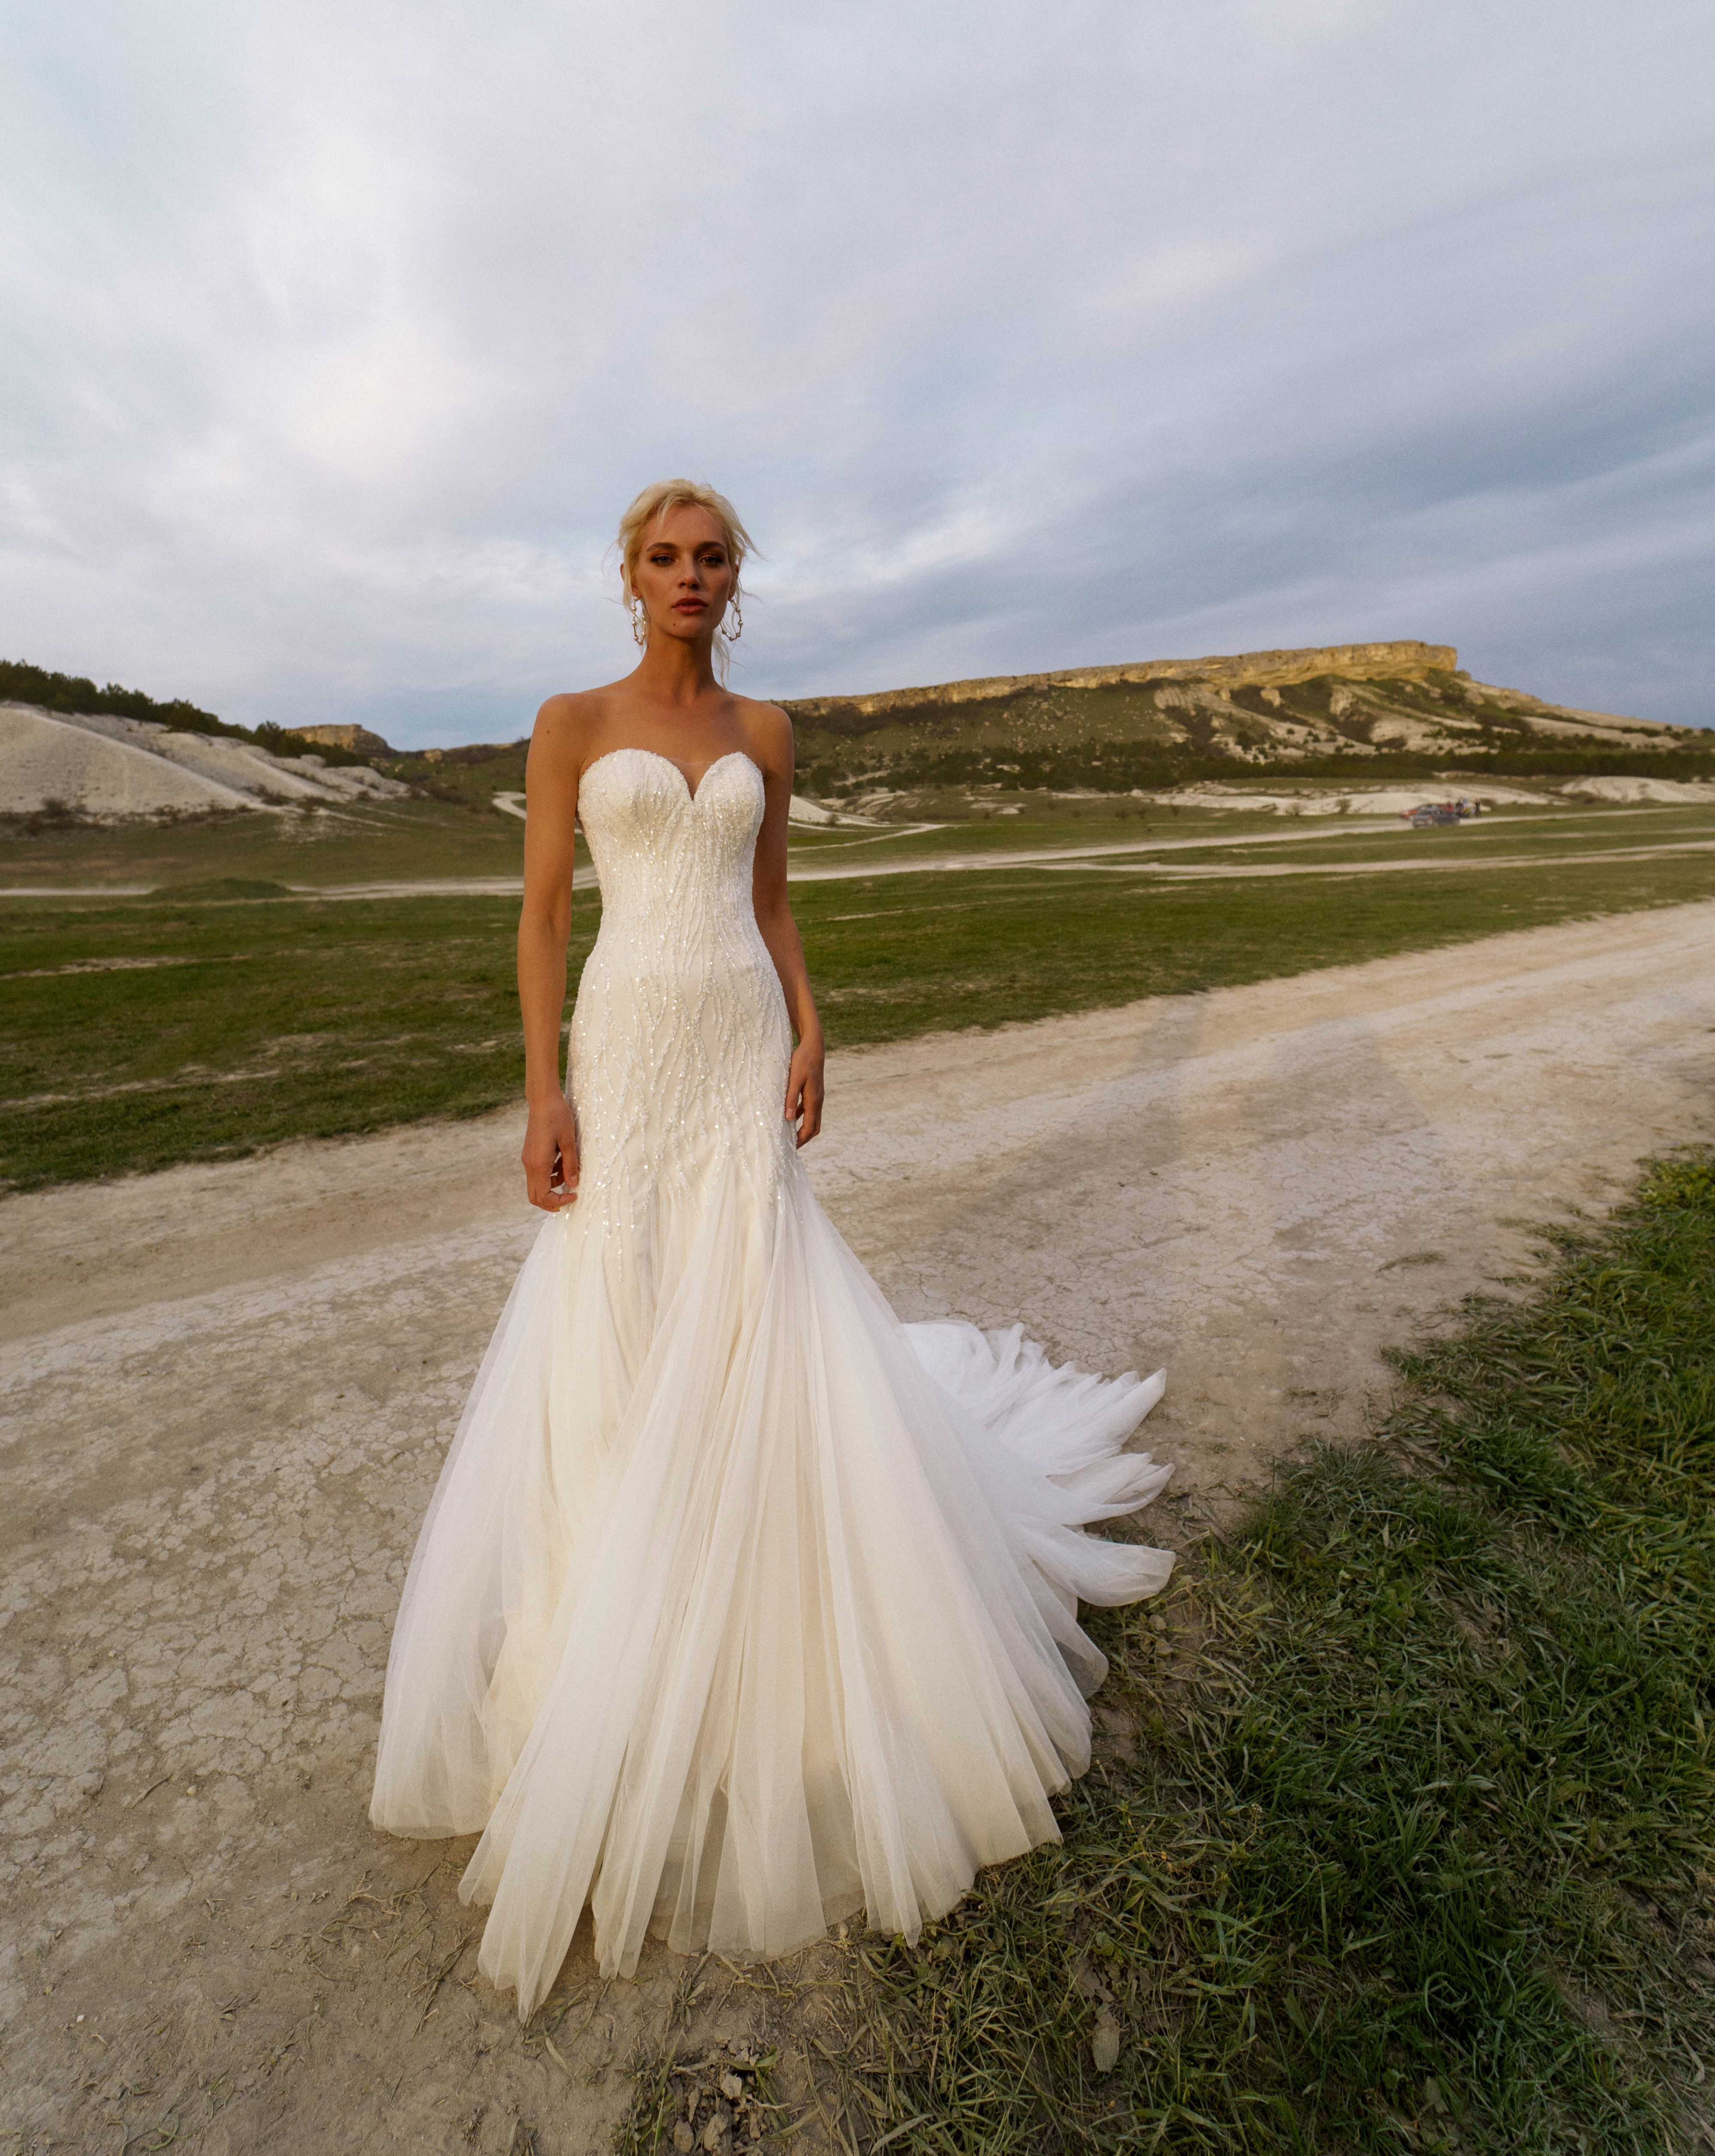 Купить свадебное платье «Лердис» Наталья Романова из коллекции Блаш 2022 года в салоне «Мэри Трюфель»